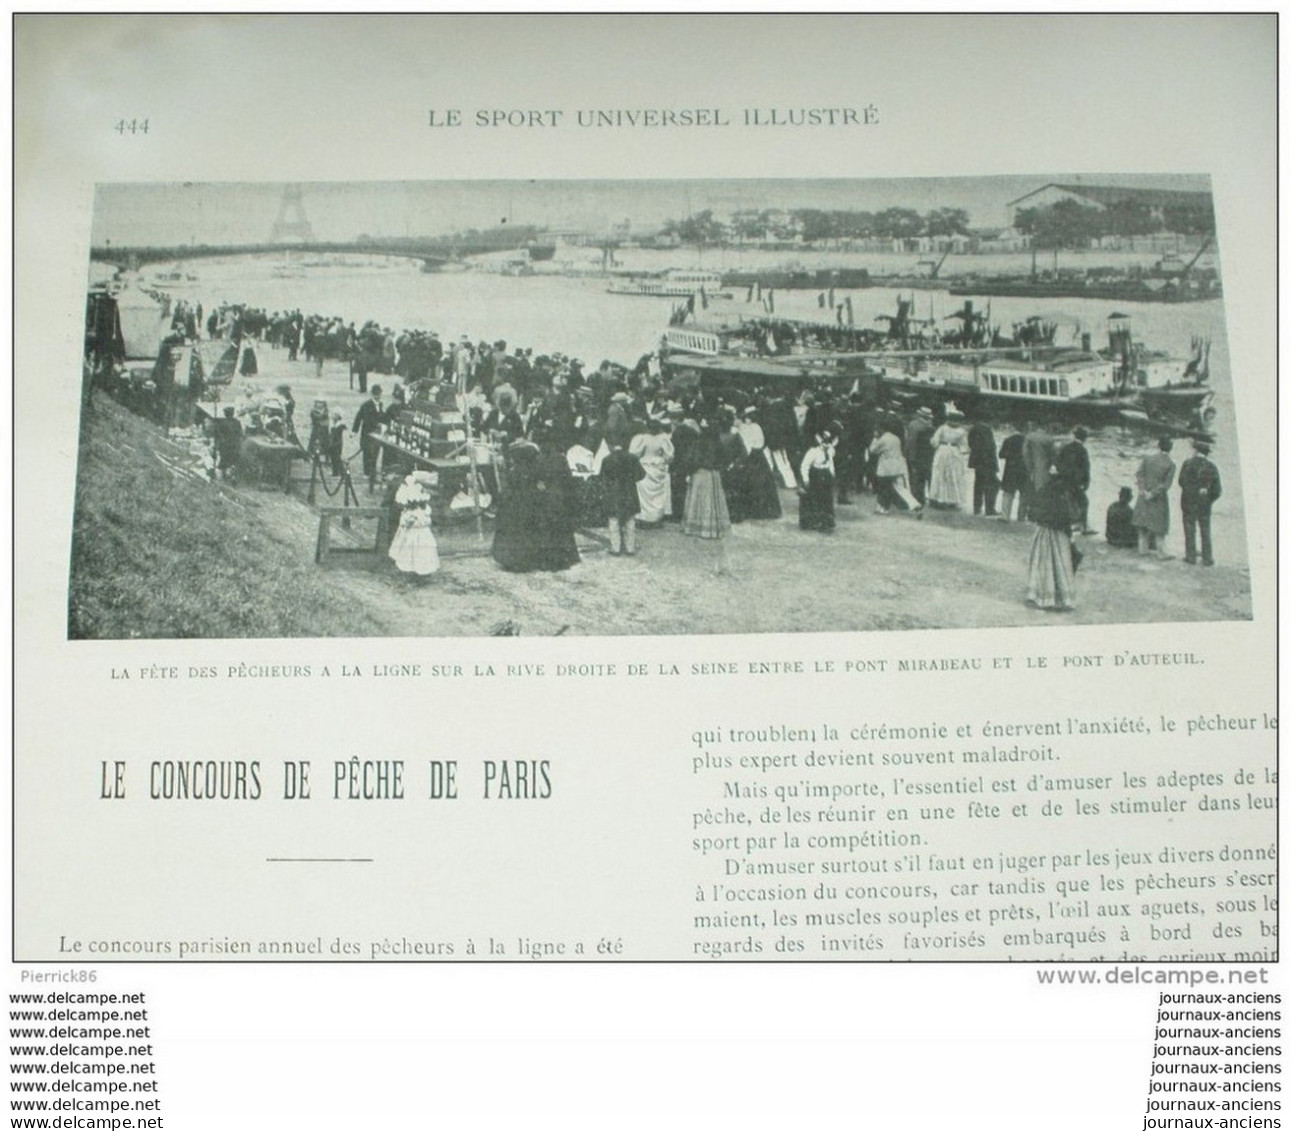 1899 EXPOSITION CANINE D'AMIENS - SALON DE L'AUTO - CONCOURS DE PECHE - ESCRIME LES DUELS DE PINI